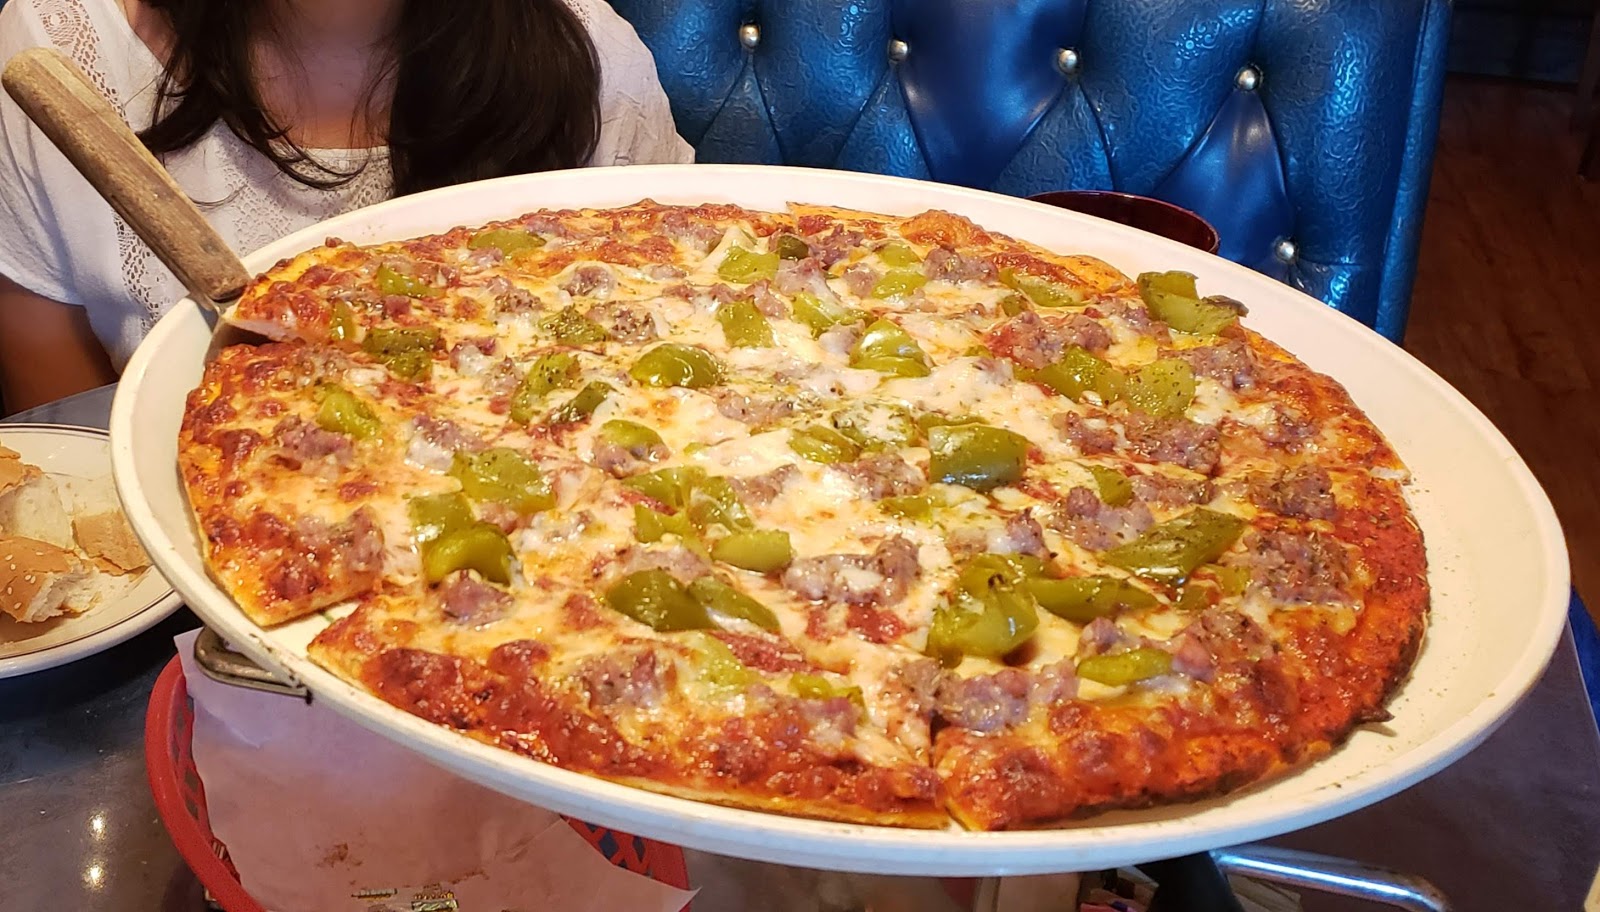 Casa Bianca Pizza Pie